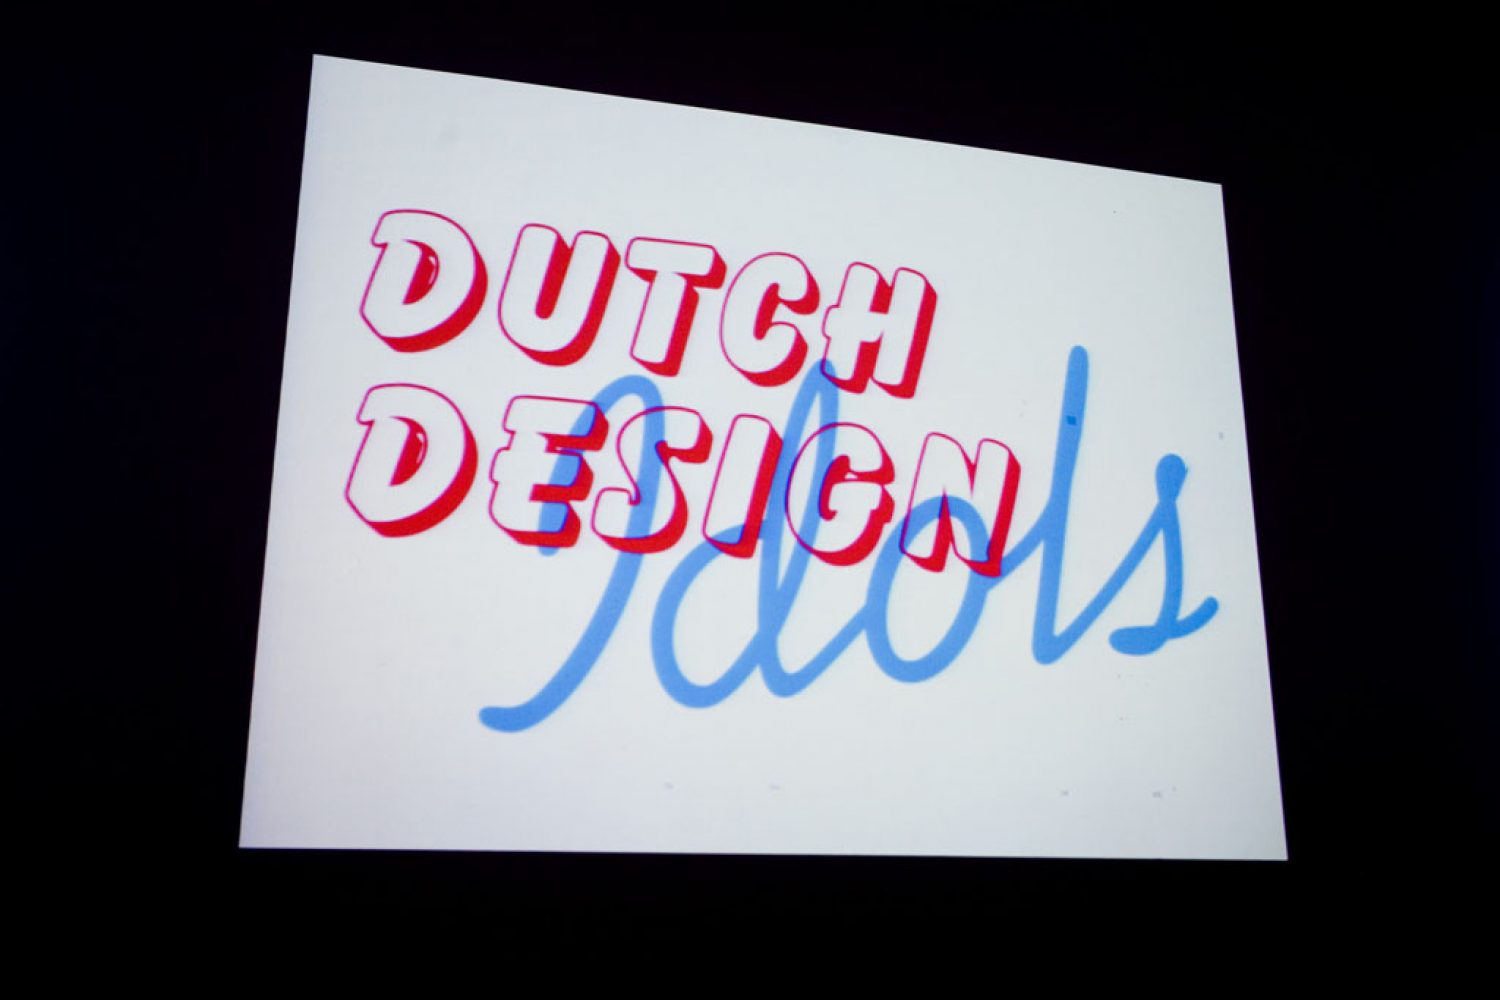 Dutch Design Idols